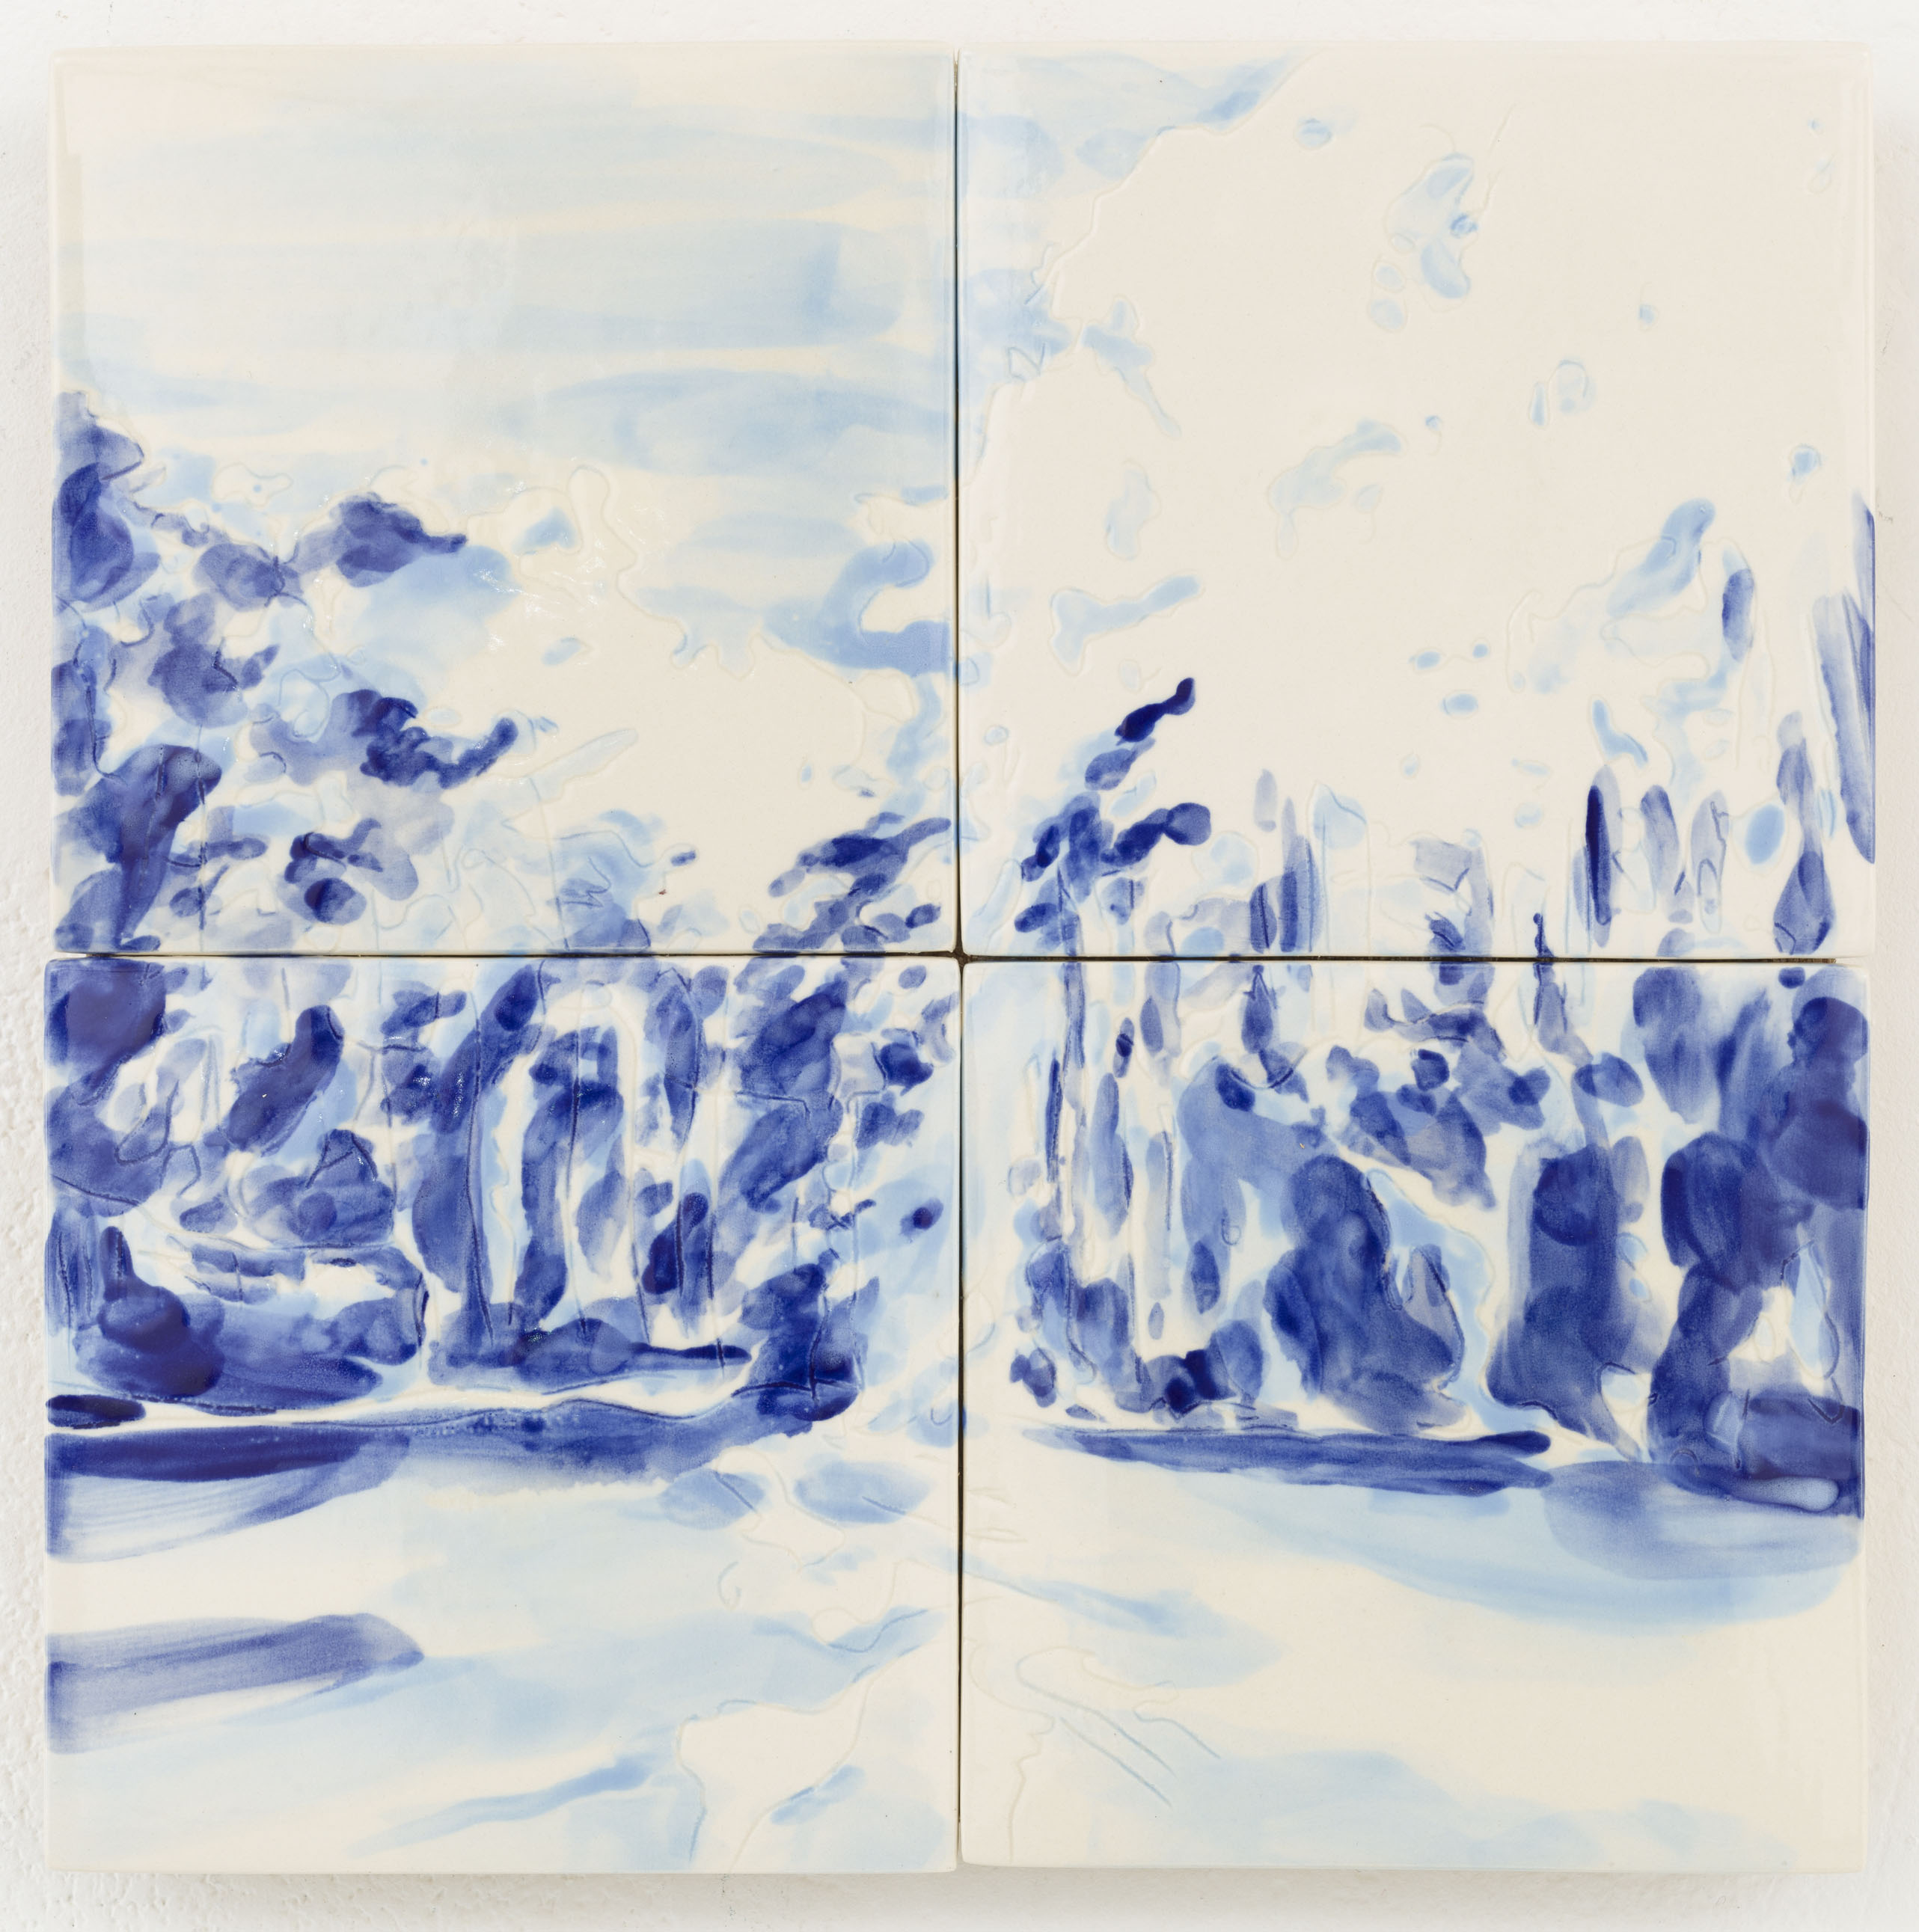 "Floresta I. 2 x 2 painted ceramic tiles, 29,5 x 29,5 cm, NL 2014